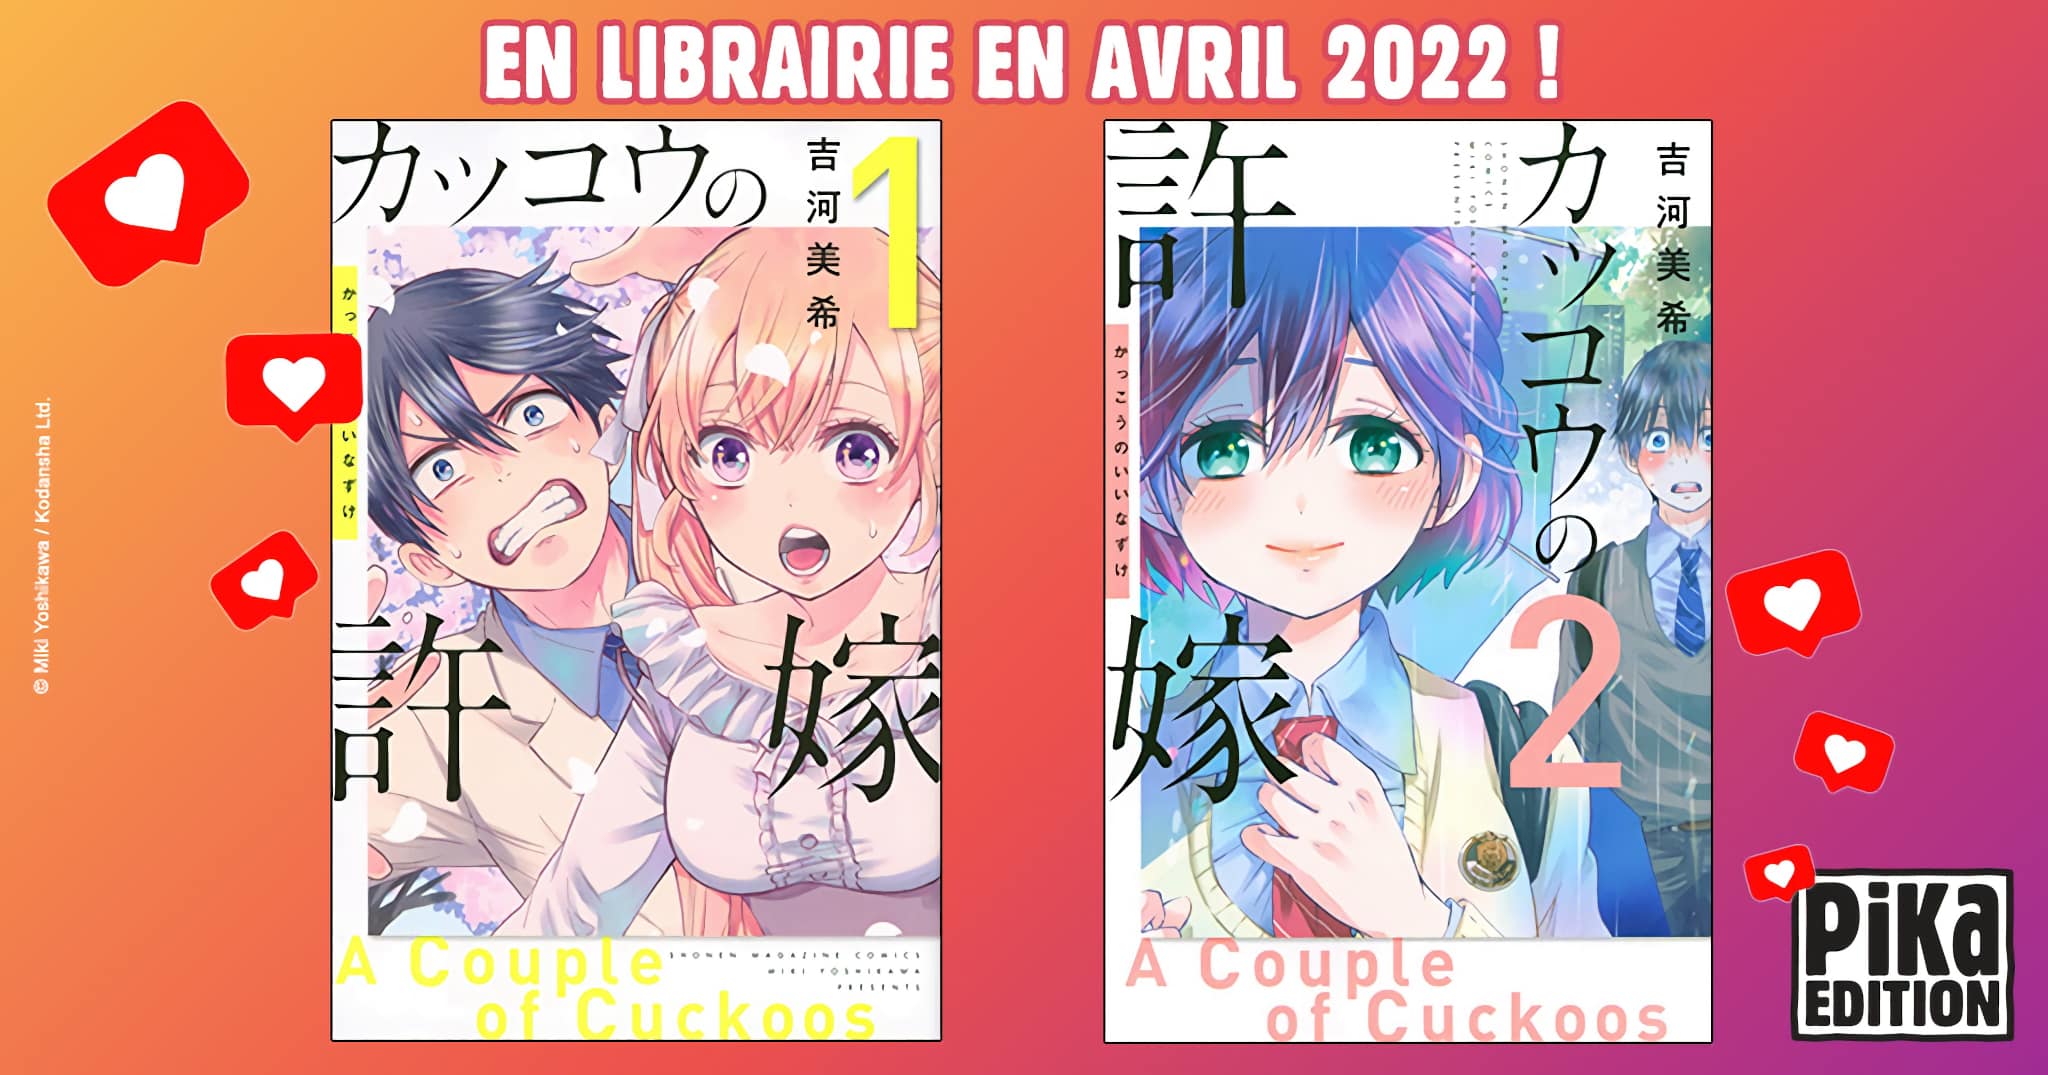 Annonce du manga A Couple of Cuckoos en france aux éditions Pika pour 2022